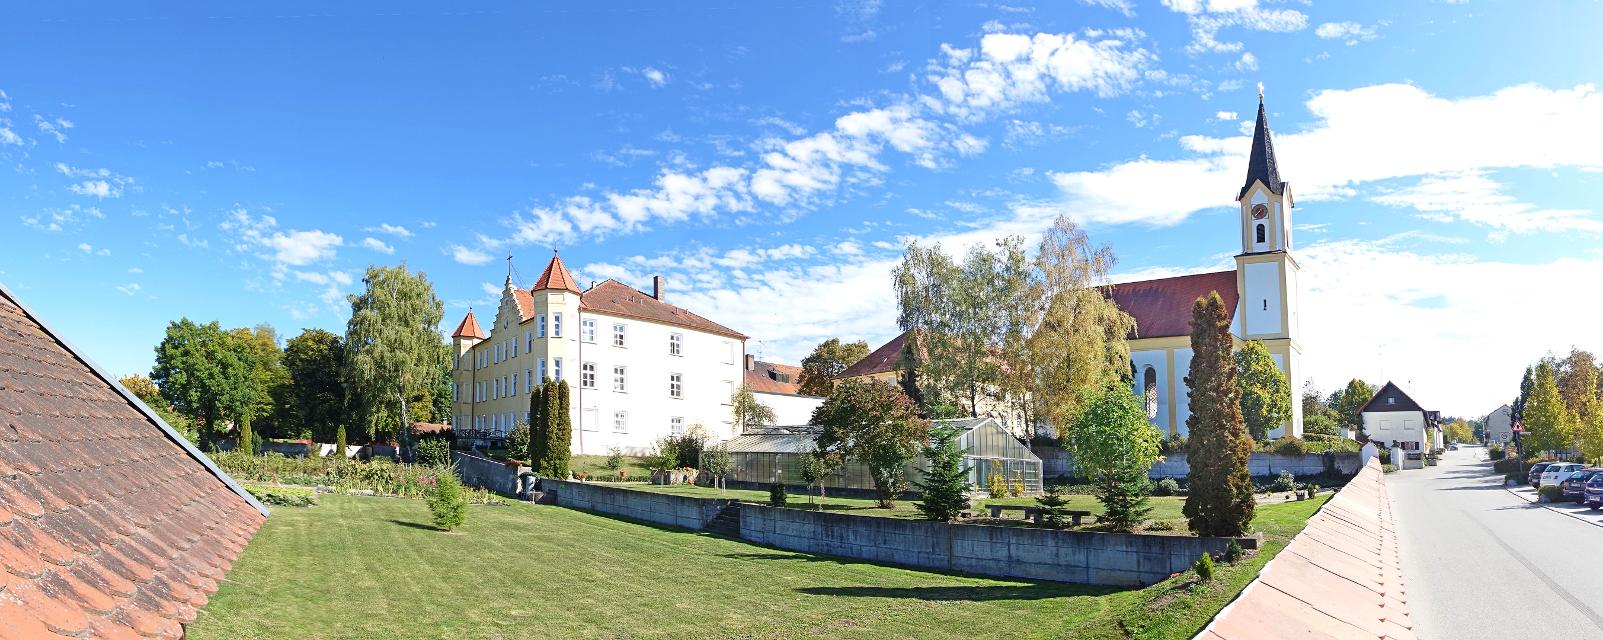 Die Kloster- und ehemalige Schlossanlage in Mengkofen spiegelt die Tradition und Geschichte des Ortes wider. Schloss Tunzenberg bei Mengkofen gilt als einer der schönsten niederbayerischen Adelssitze. Wanderwege rund um das Schloss vervollständigen das Angebot für Besucher.